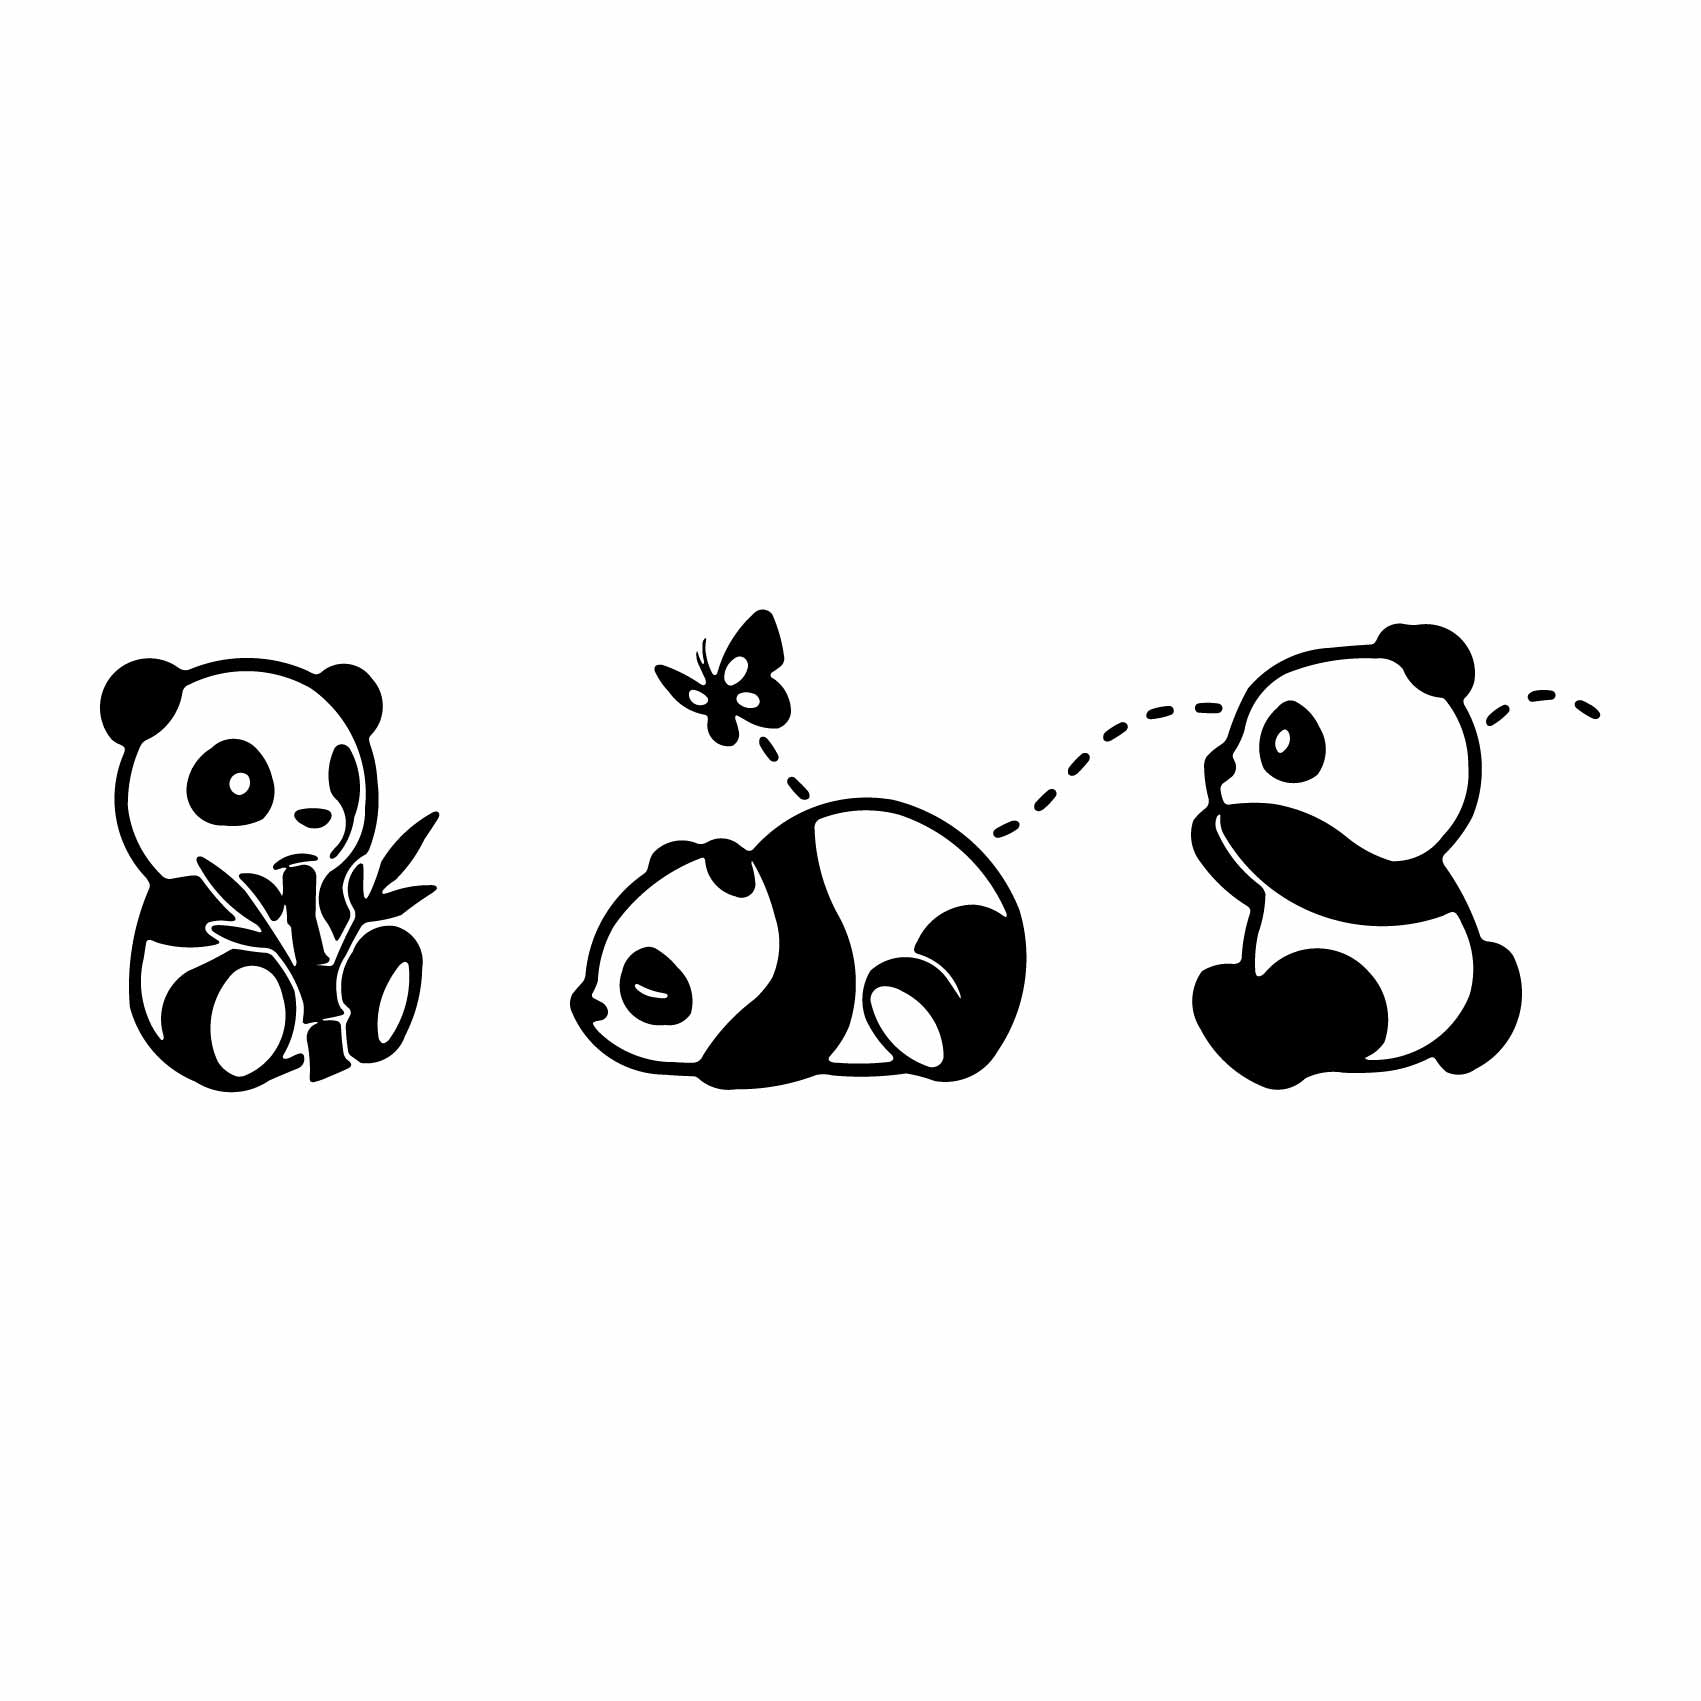 stickers-bébés-panda-ref10panda-stickers-muraux-panda-autocollant-mural-panda-sticker-chambre-enfant-garcon-fille-decoration-deco-(2)